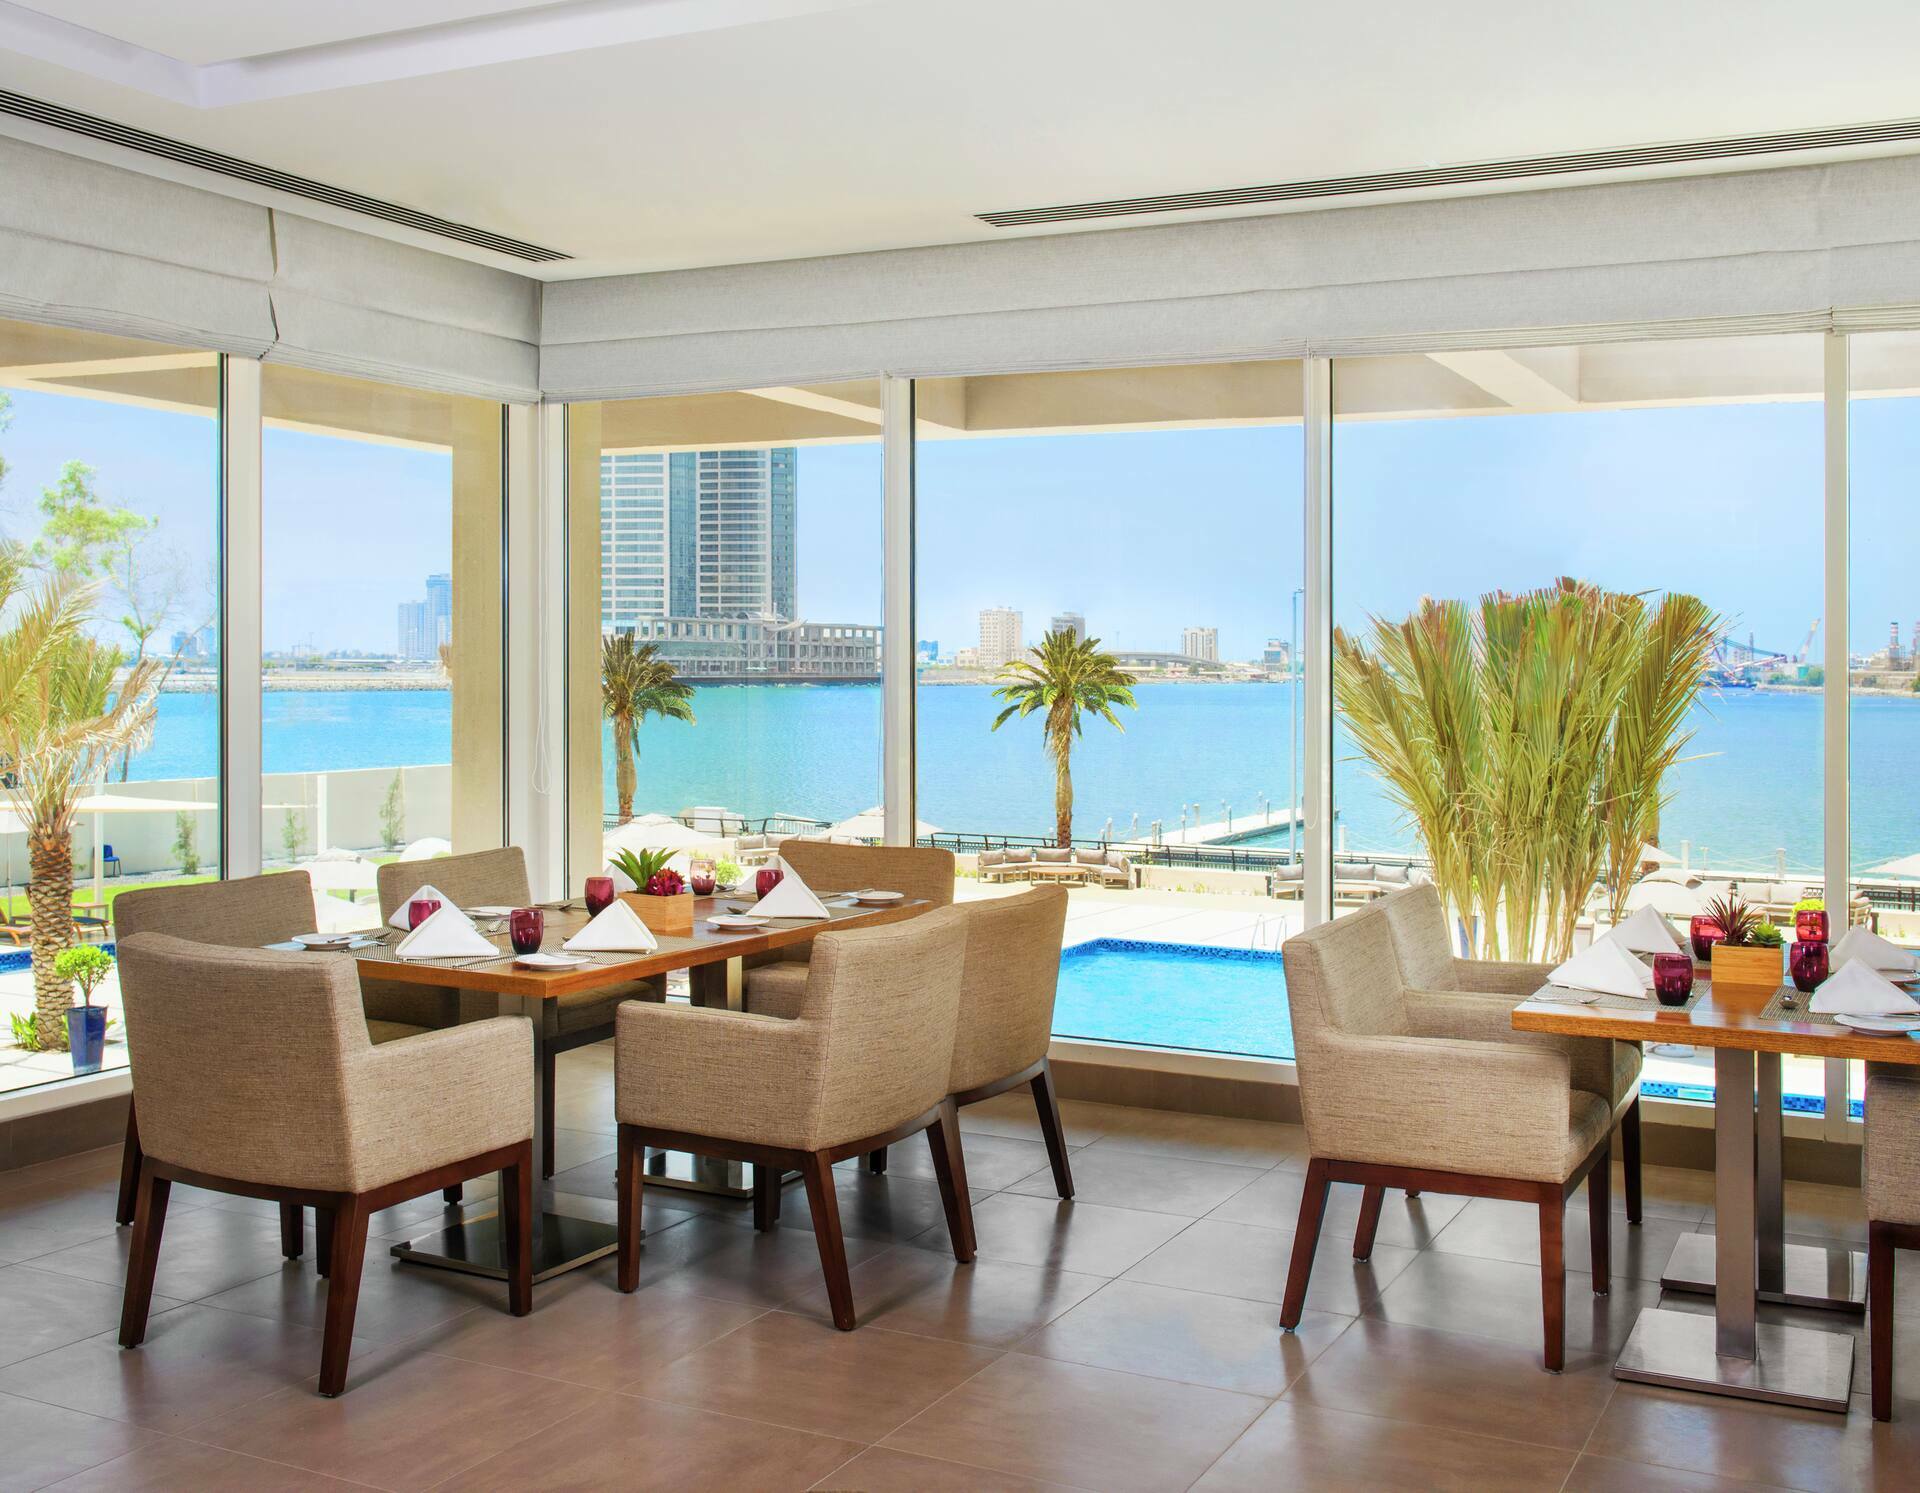 Photo of Hilton Garden Inn Ras Al Khaimah, Ras Al Khaimah, United Arab Emirates